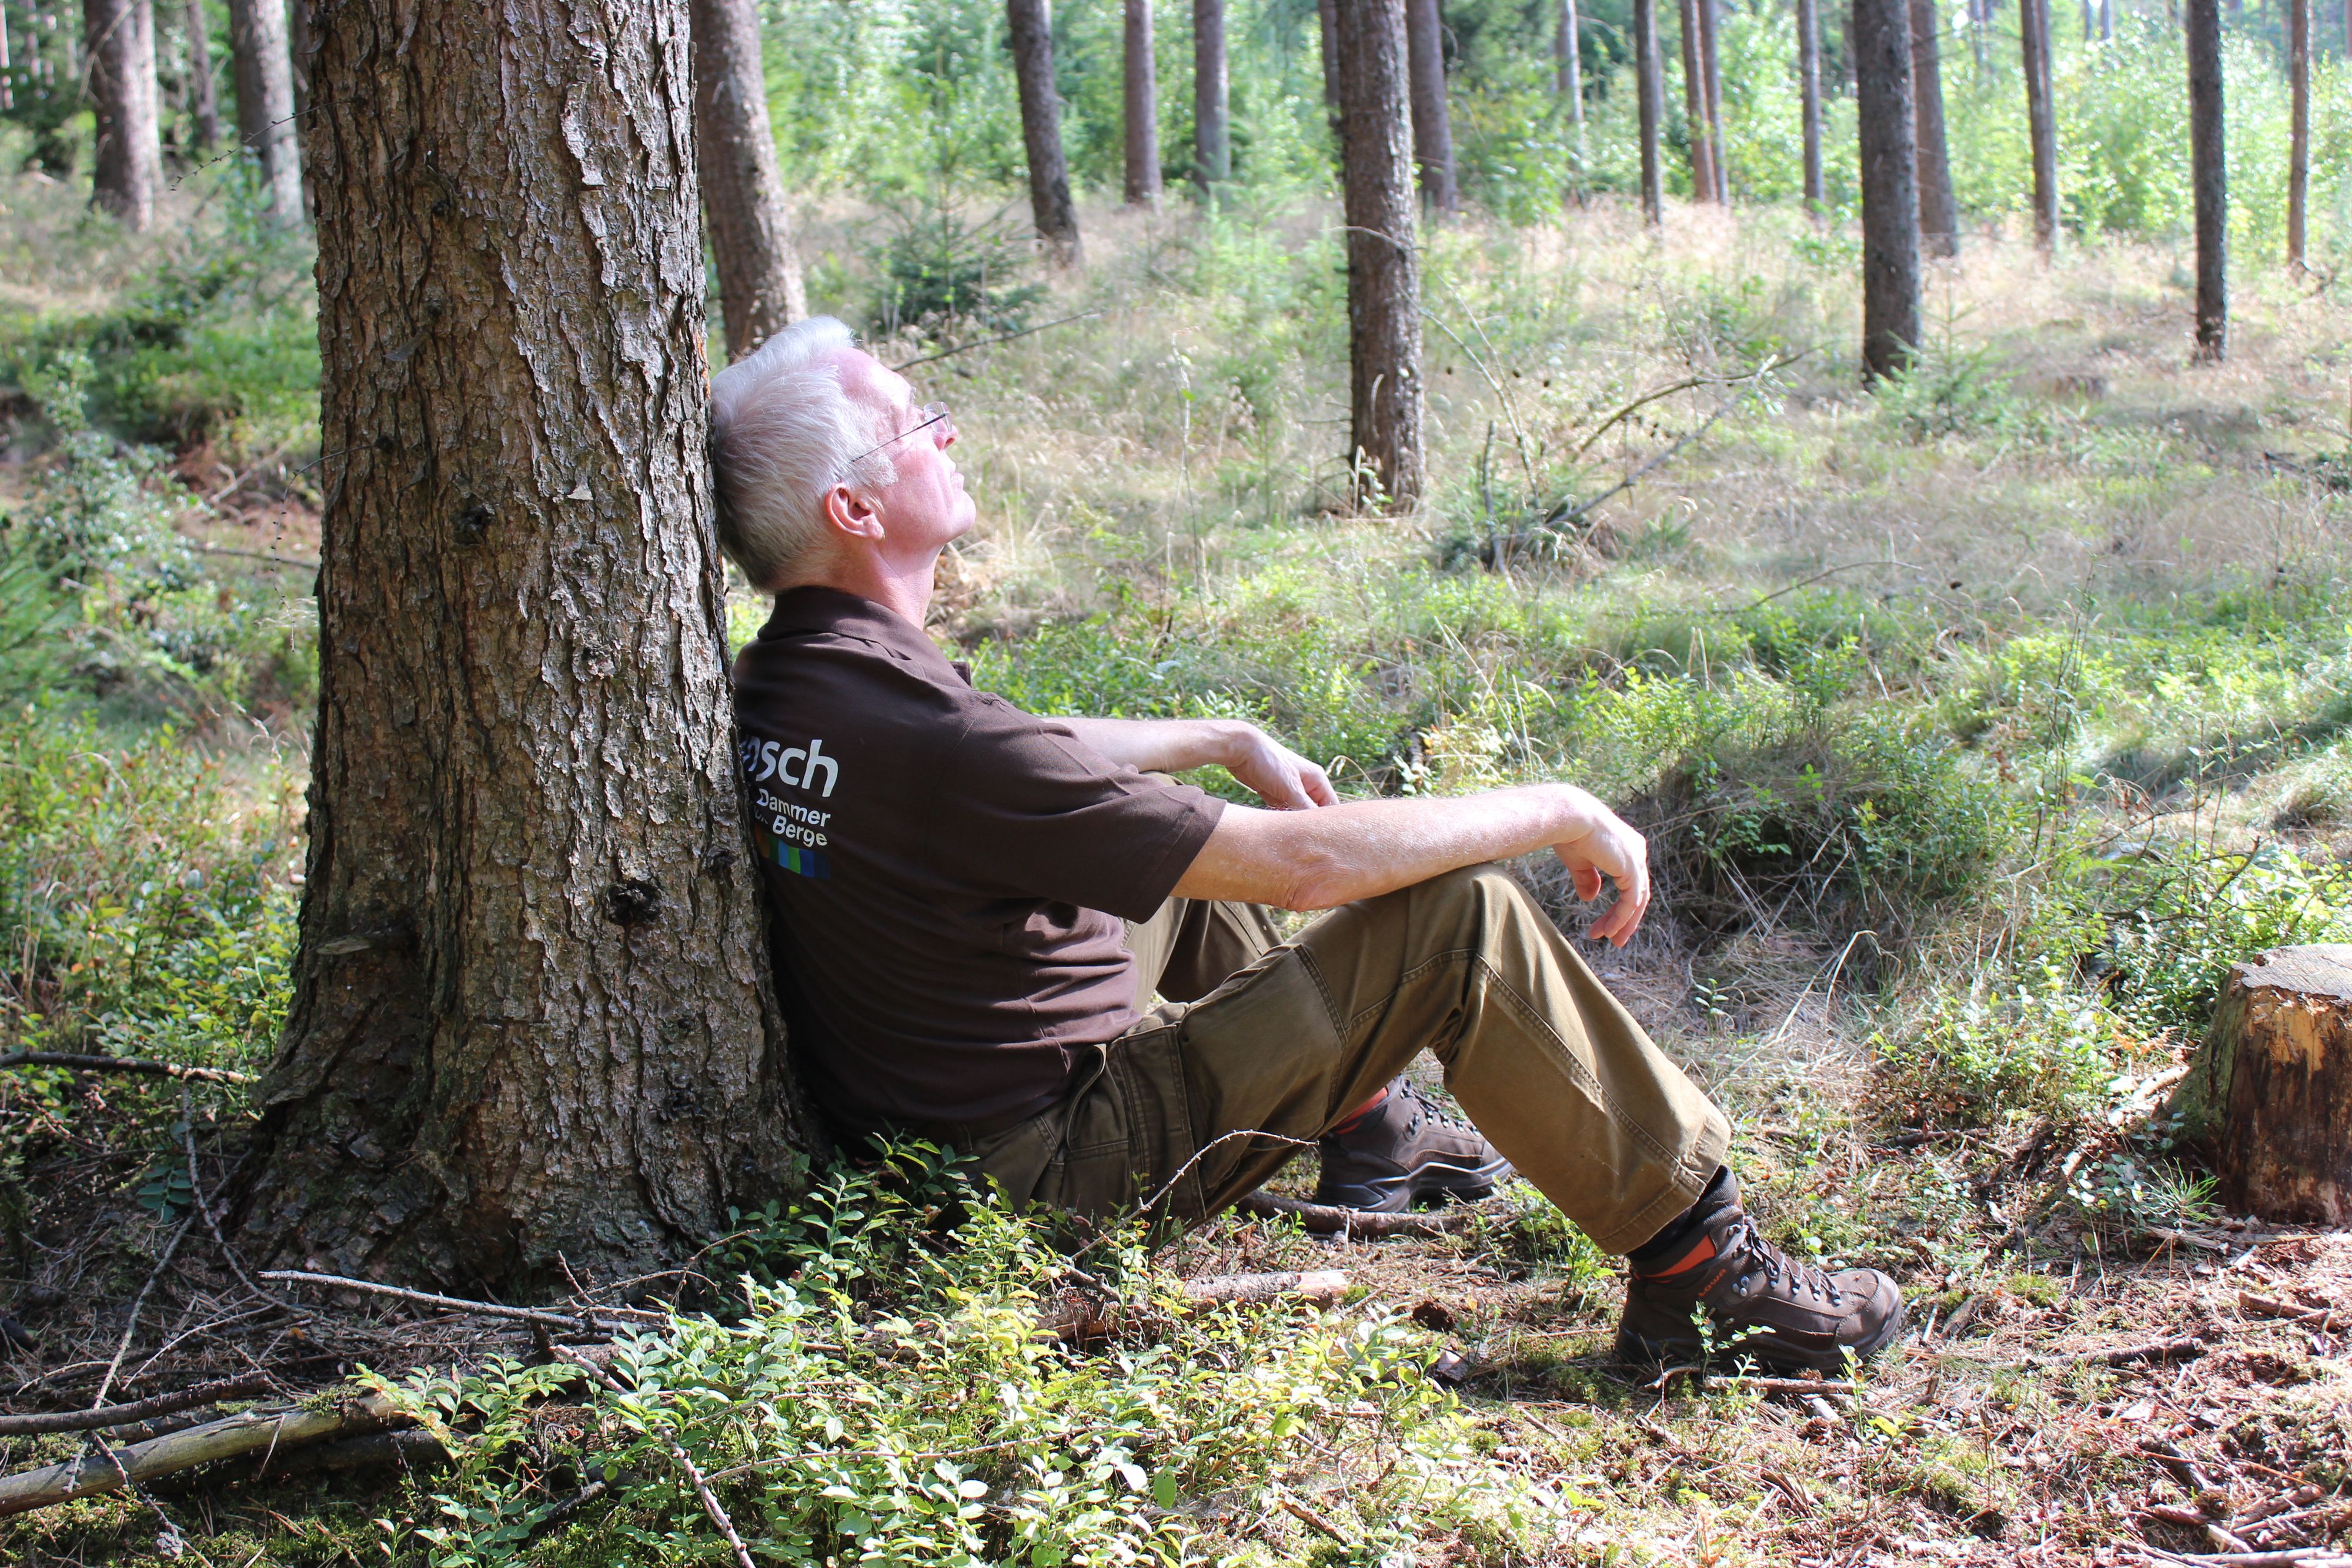 Waldbaden: Klaus Potthoff bietet bei der "Wunsch" sowohl ein Afterwork- als auch ein Intensiv-Waldbaden an. Es soll sich positiv auf die Gesundheit der Menschen auswirken. Foto: privat